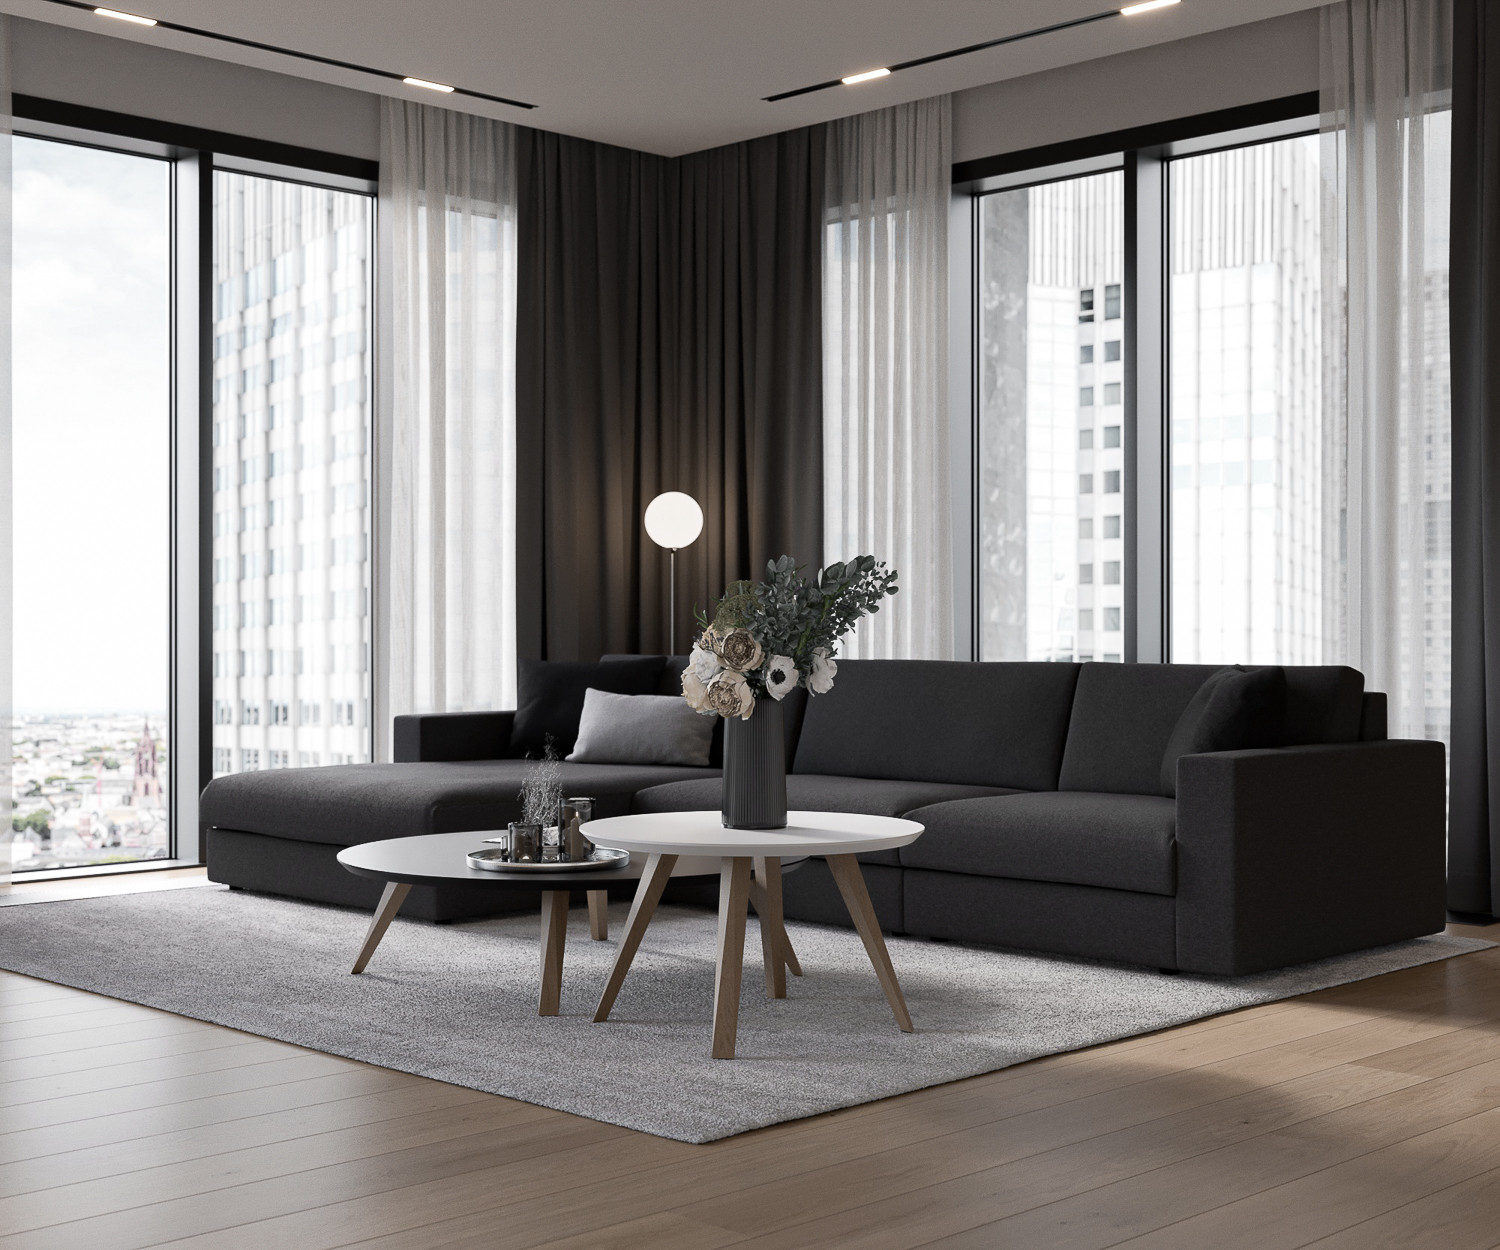 20 Moderne Wohnzimmer in grau weiß Ideen & Bilder   Februar 20 ...